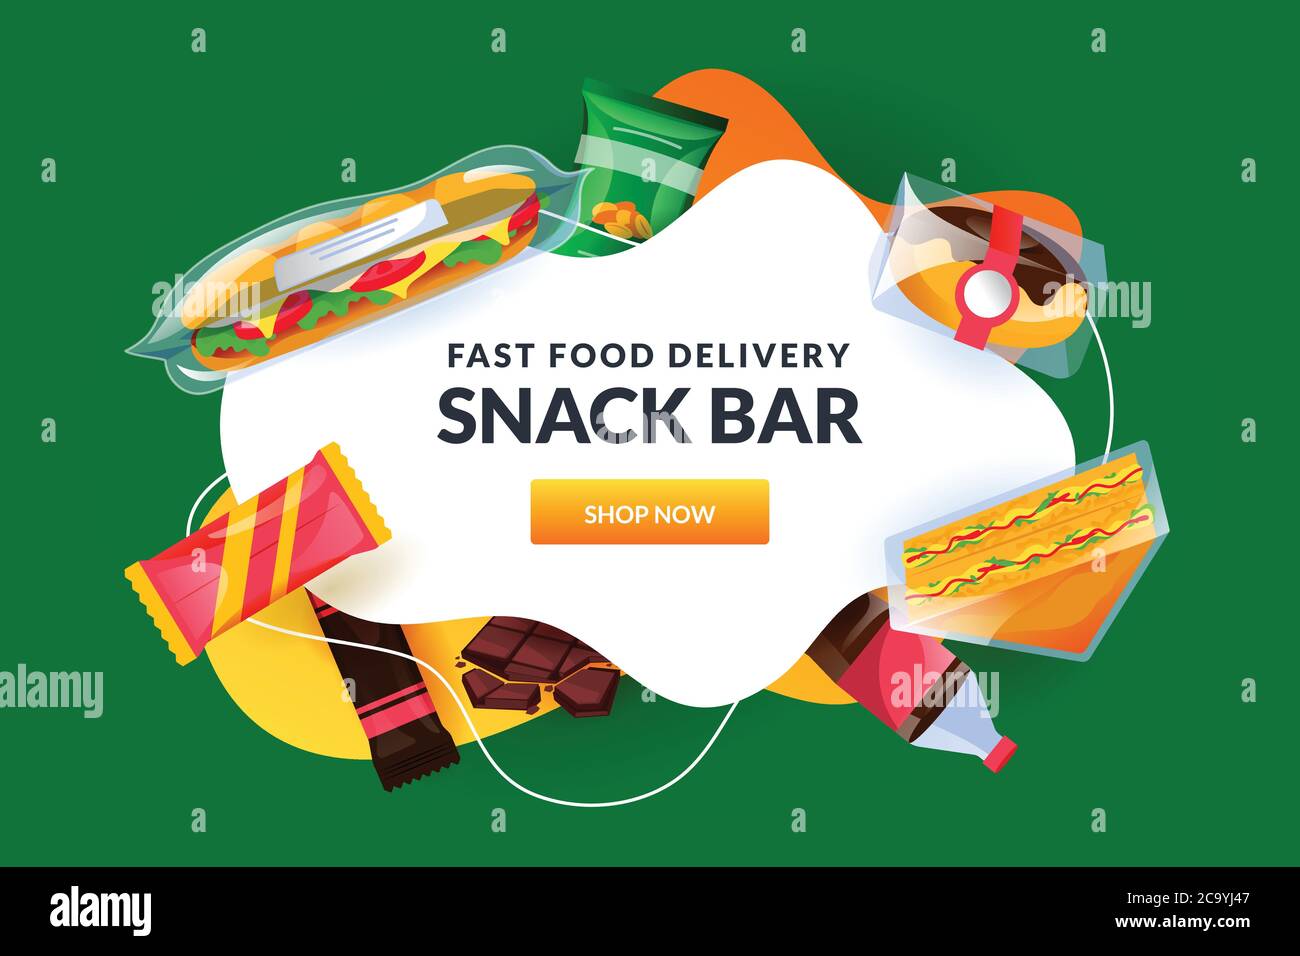 Snack-Bar weiß Rahmen mit Sandwich in Packung, Packungen von Süßigkeiten und Schokolade. Fast Junk Food Vektor Hintergrund. Werbebanner für die Lieferung von Mahlzeiten, Stock Vektor